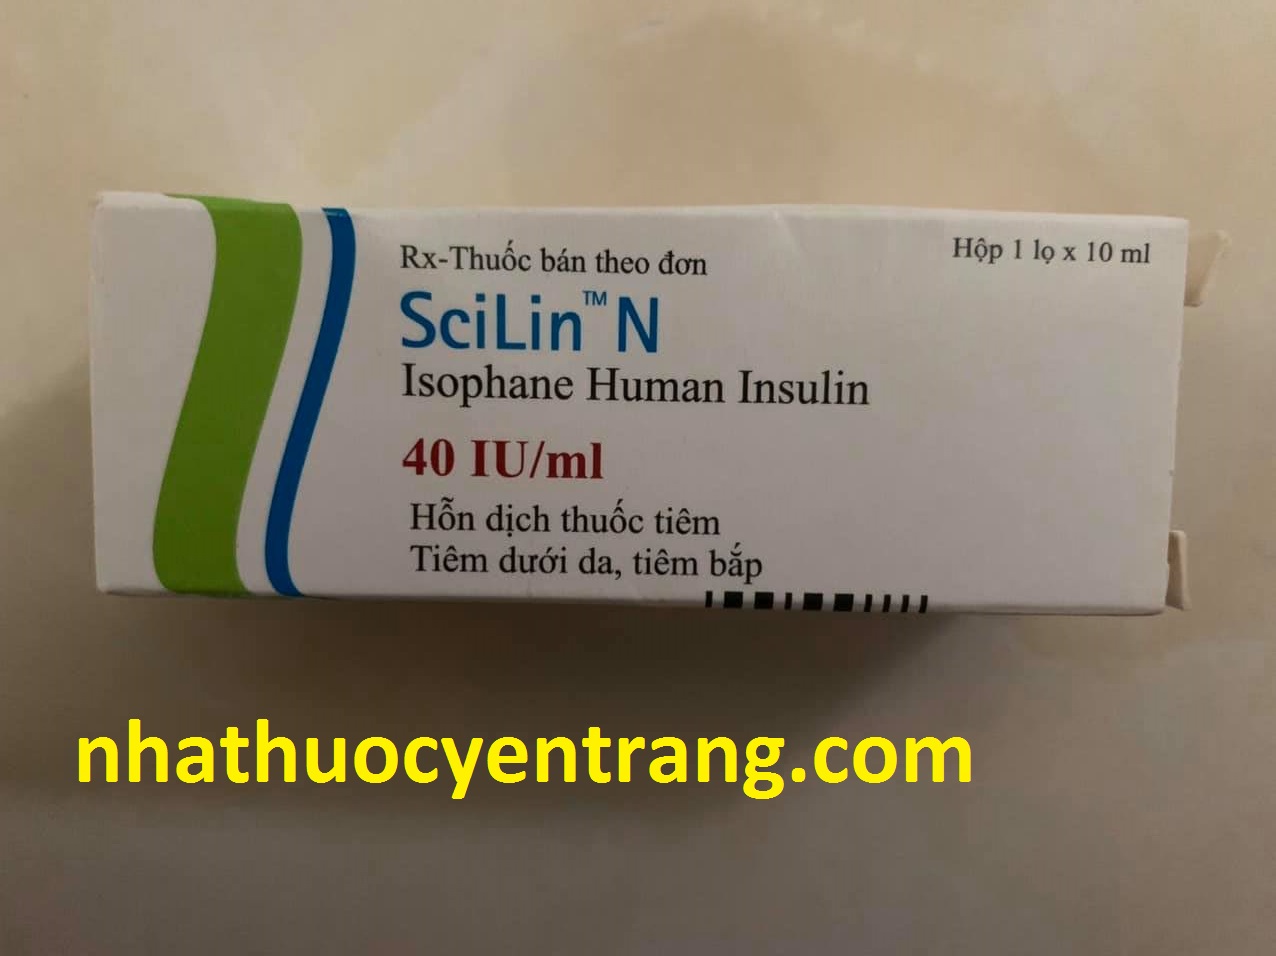 Scilin N 40 IU/ml